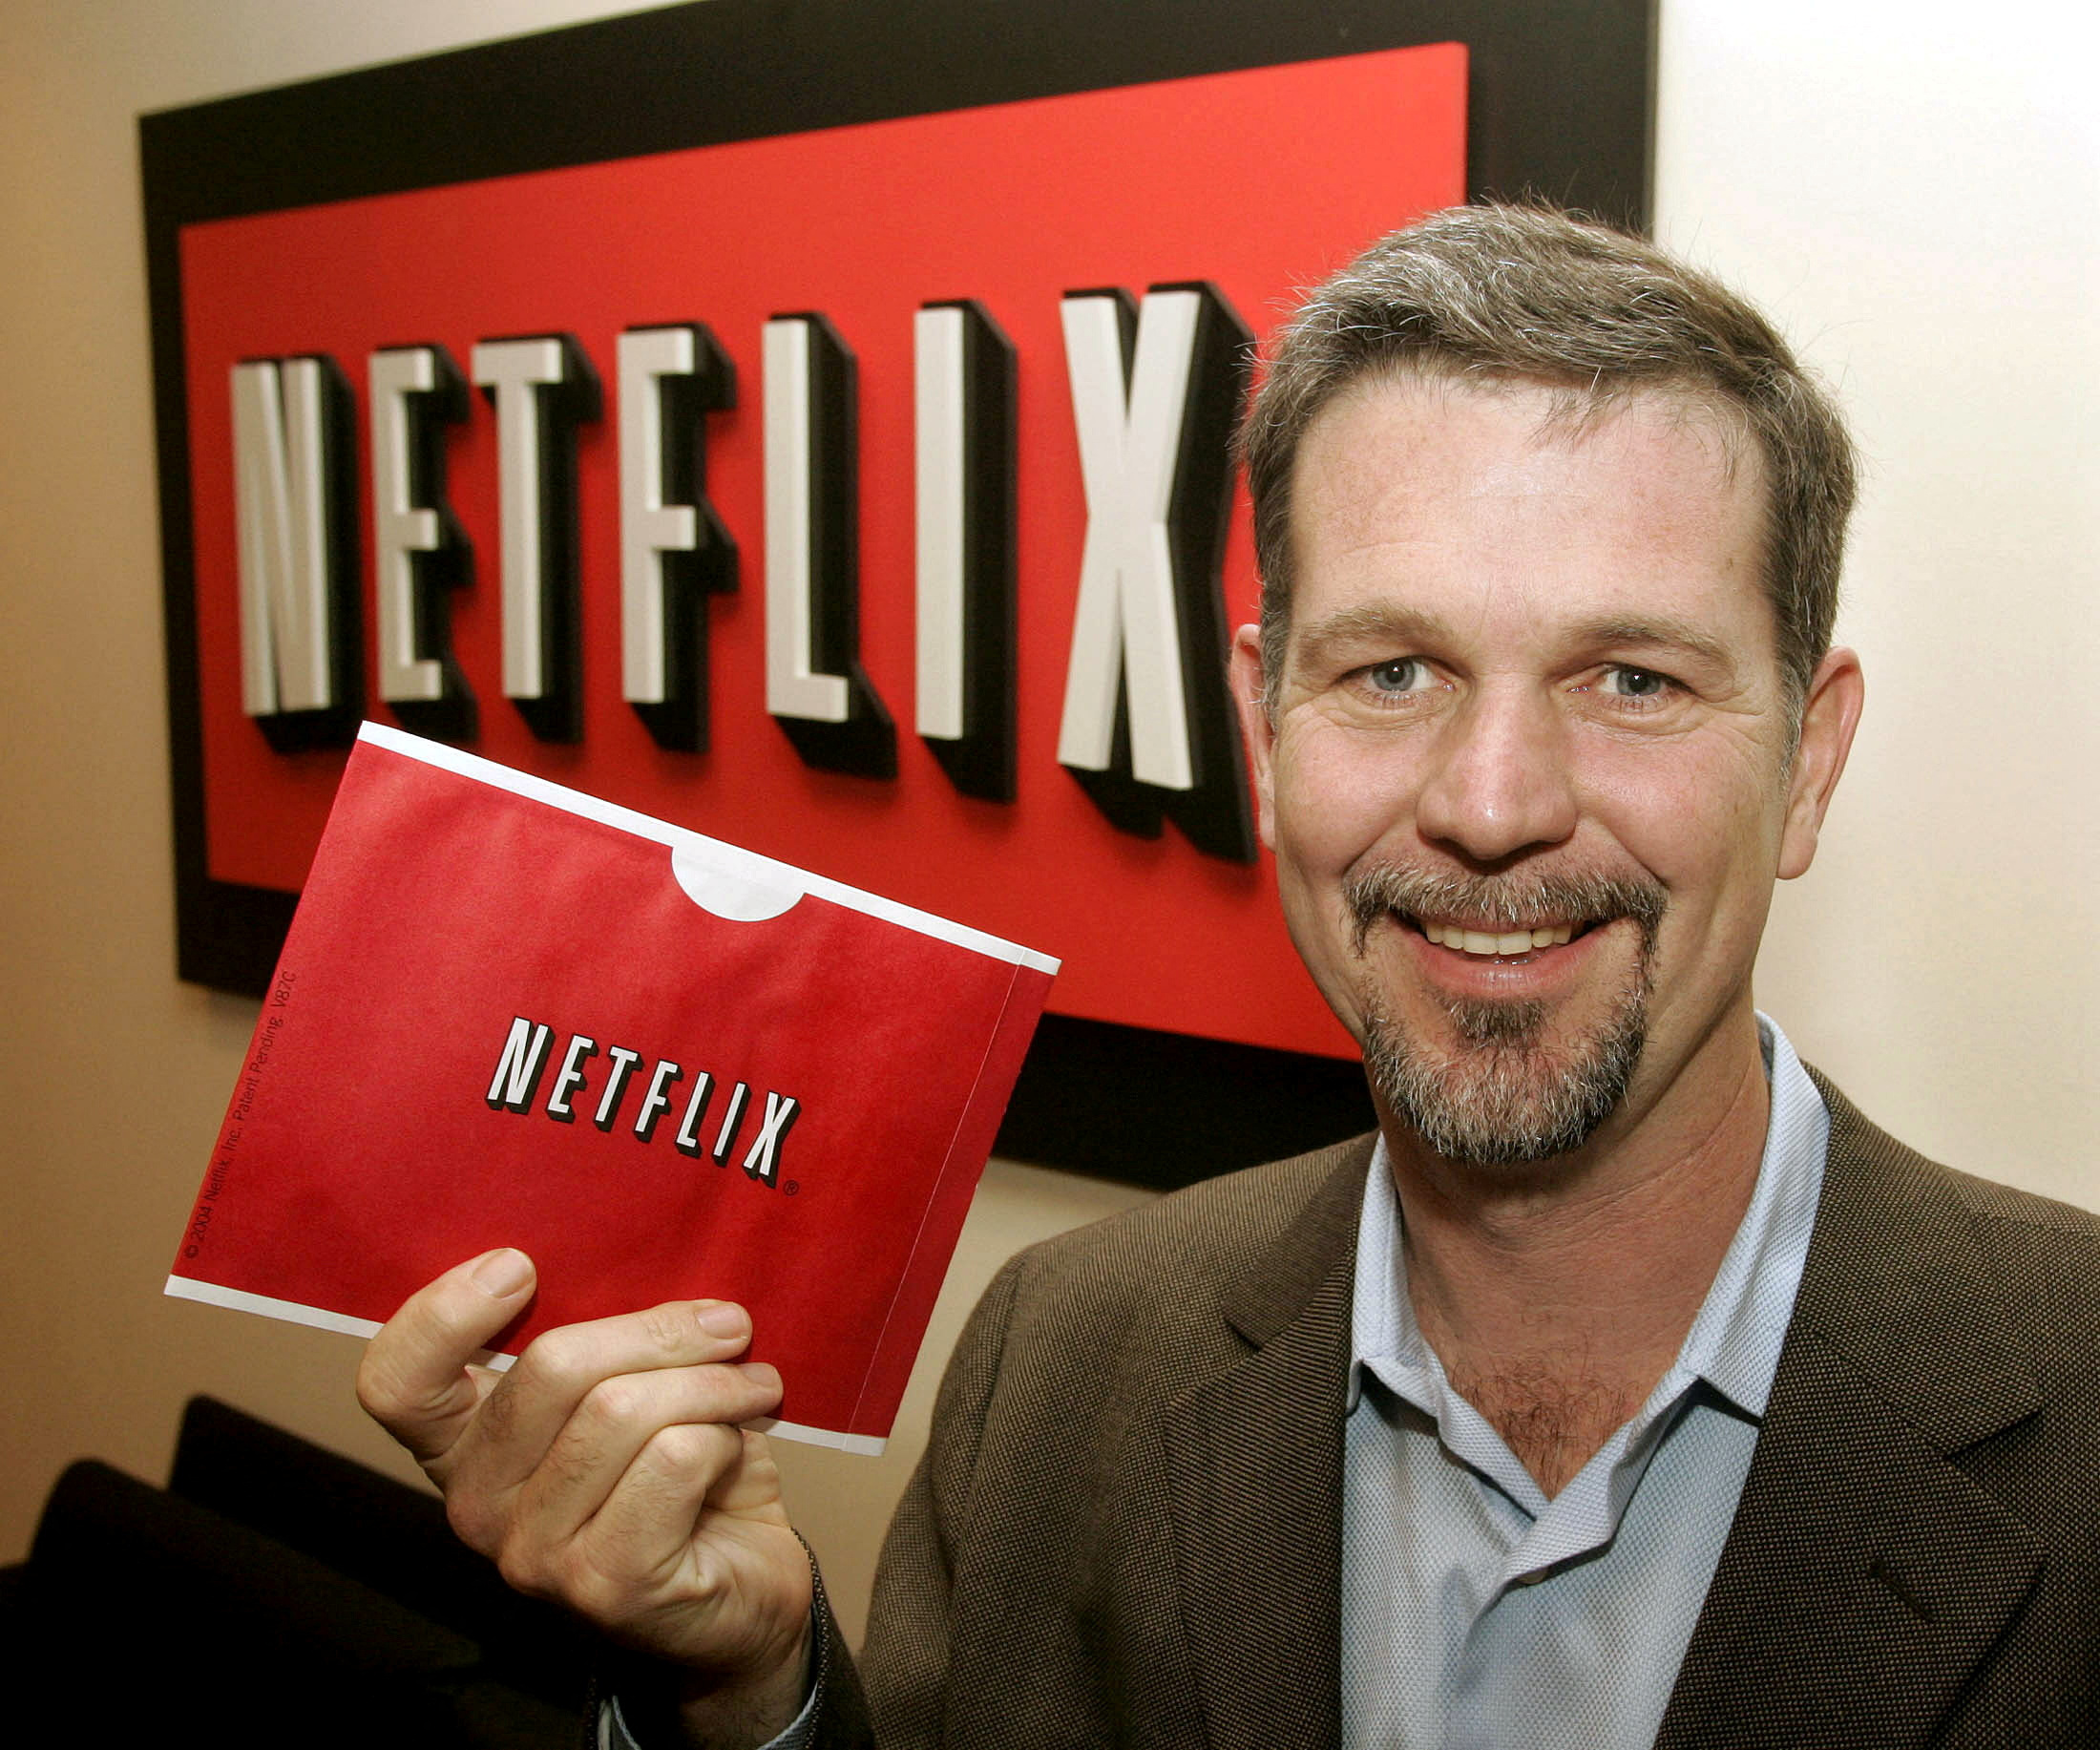 넷플릭스 설립자 리드 헤이스팅스가 2004년 12월 10일 미 캘리포니아주 비벌리힐스에 있는 그의 사무실에서 넷플릭스의 빨간 봉투를 들고 있다. 로이터 연합뉴스